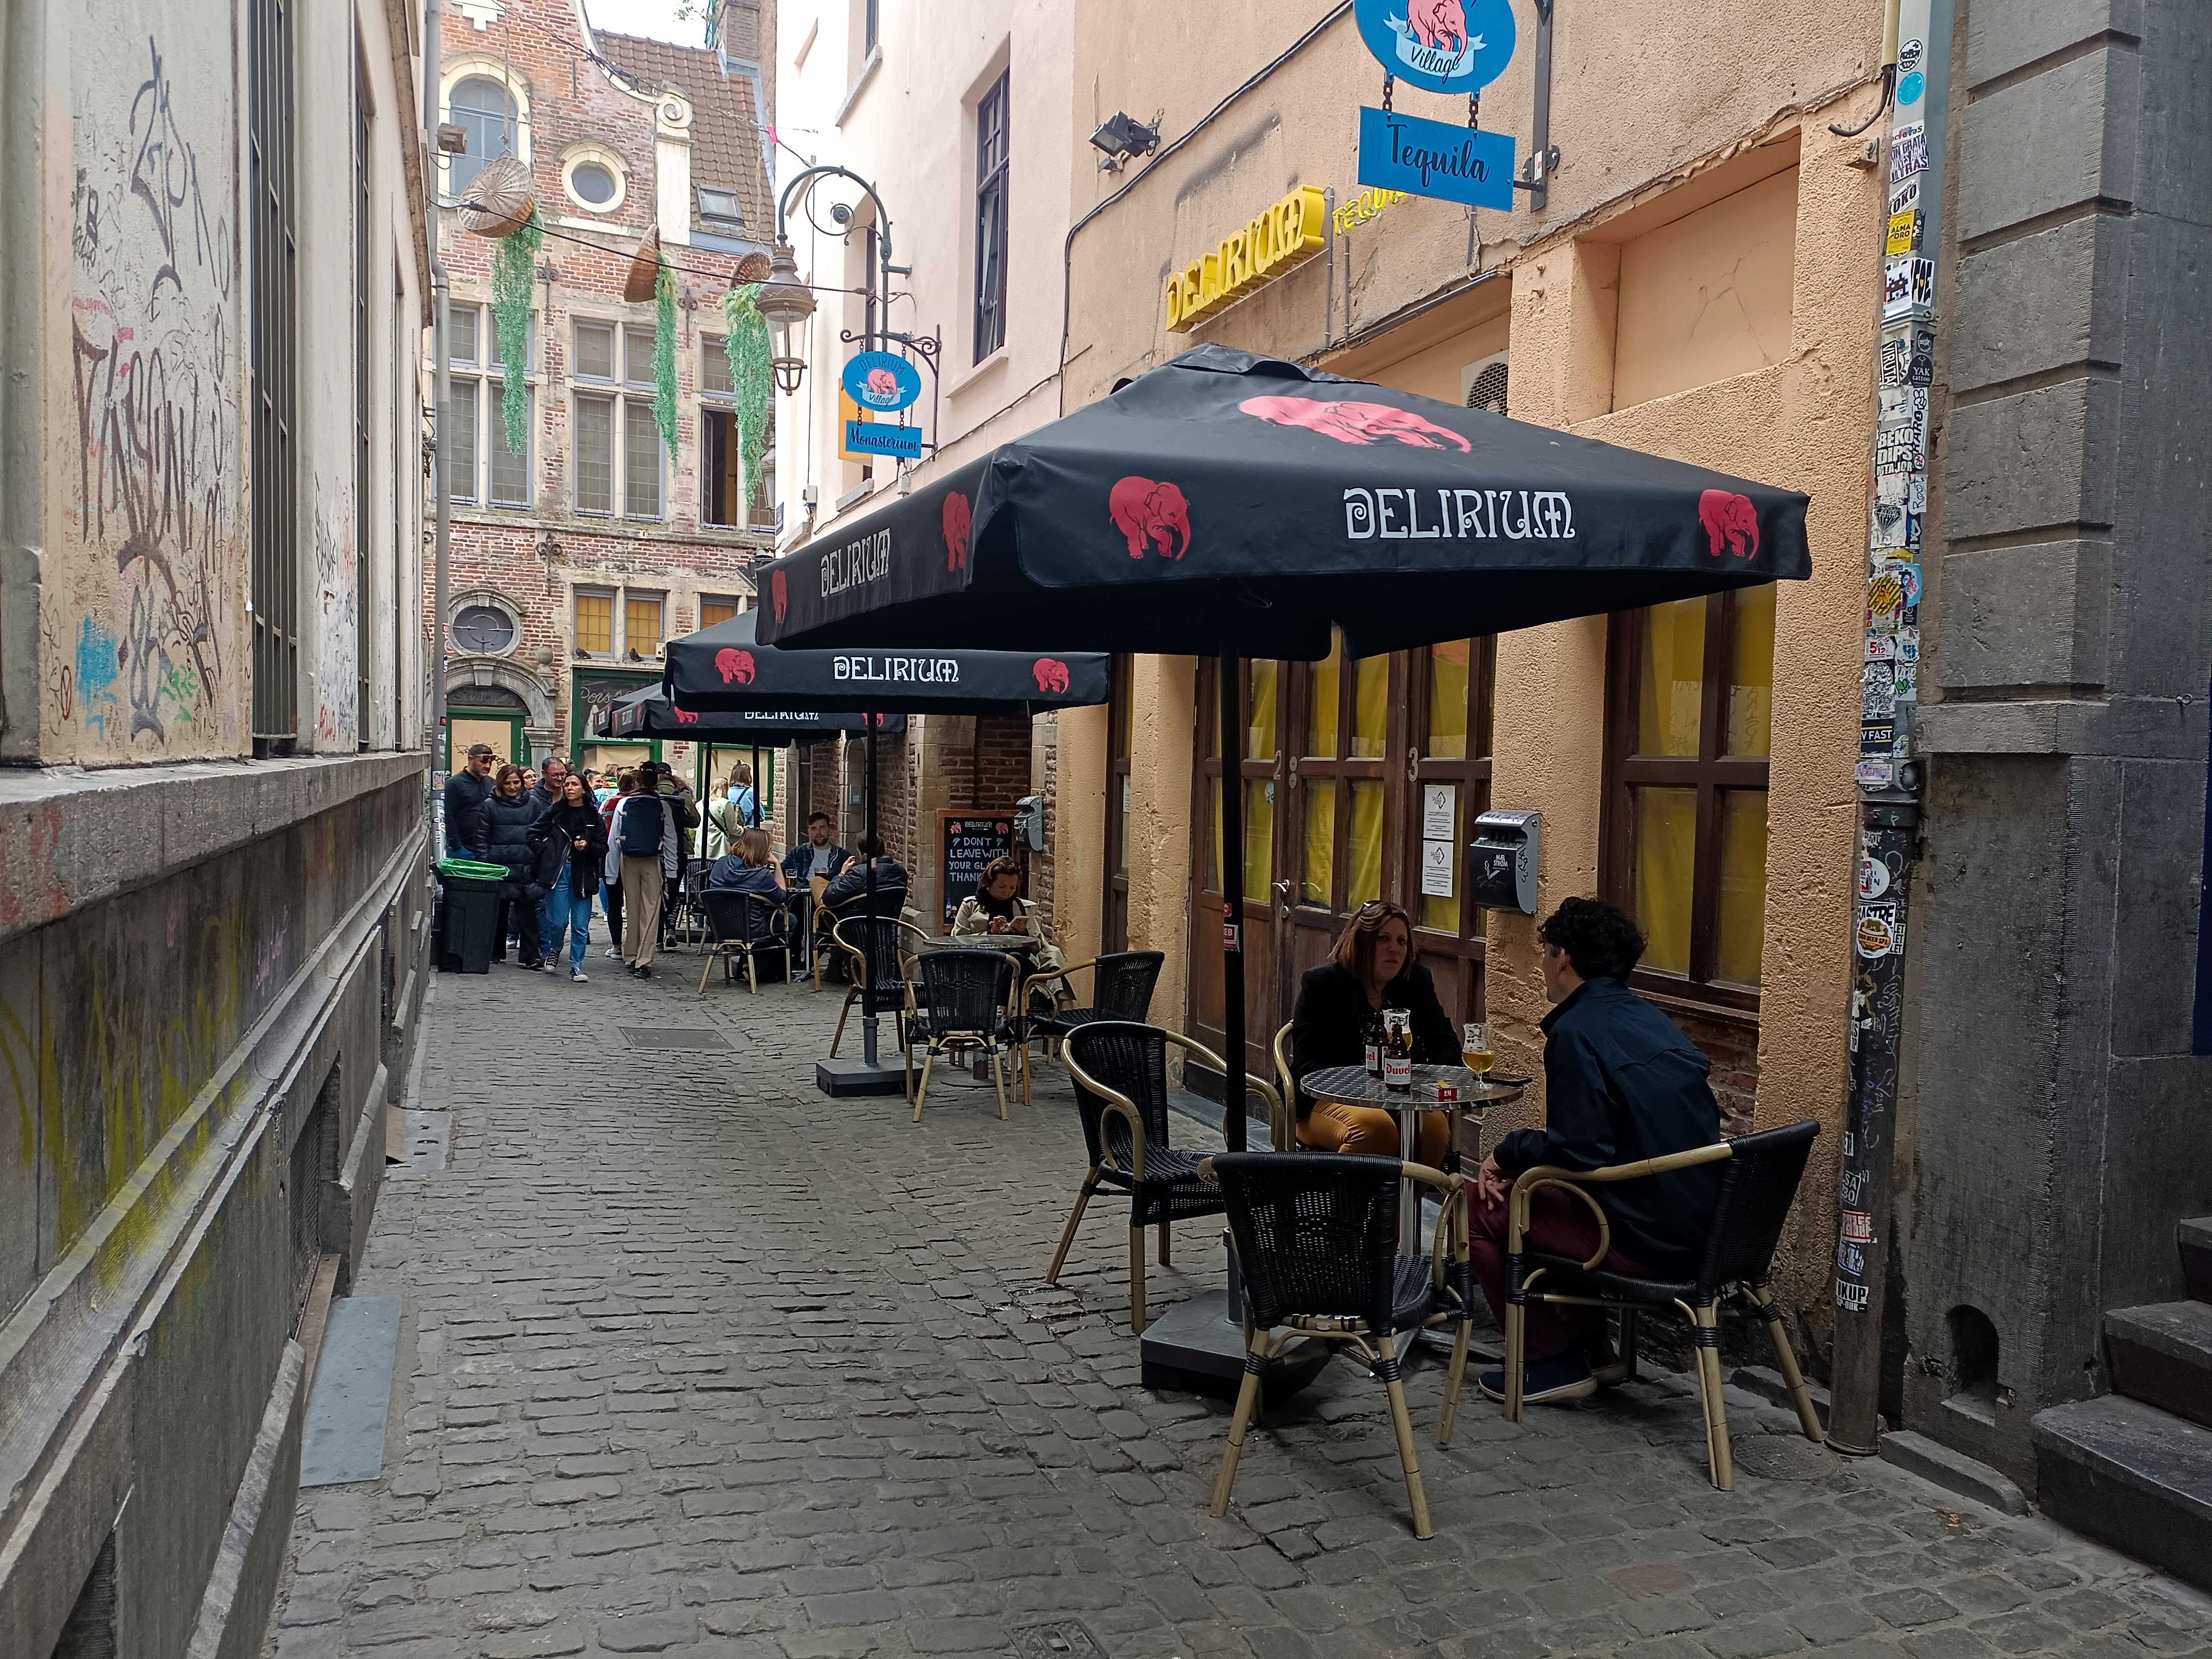 Delirium Cafe, Brussels